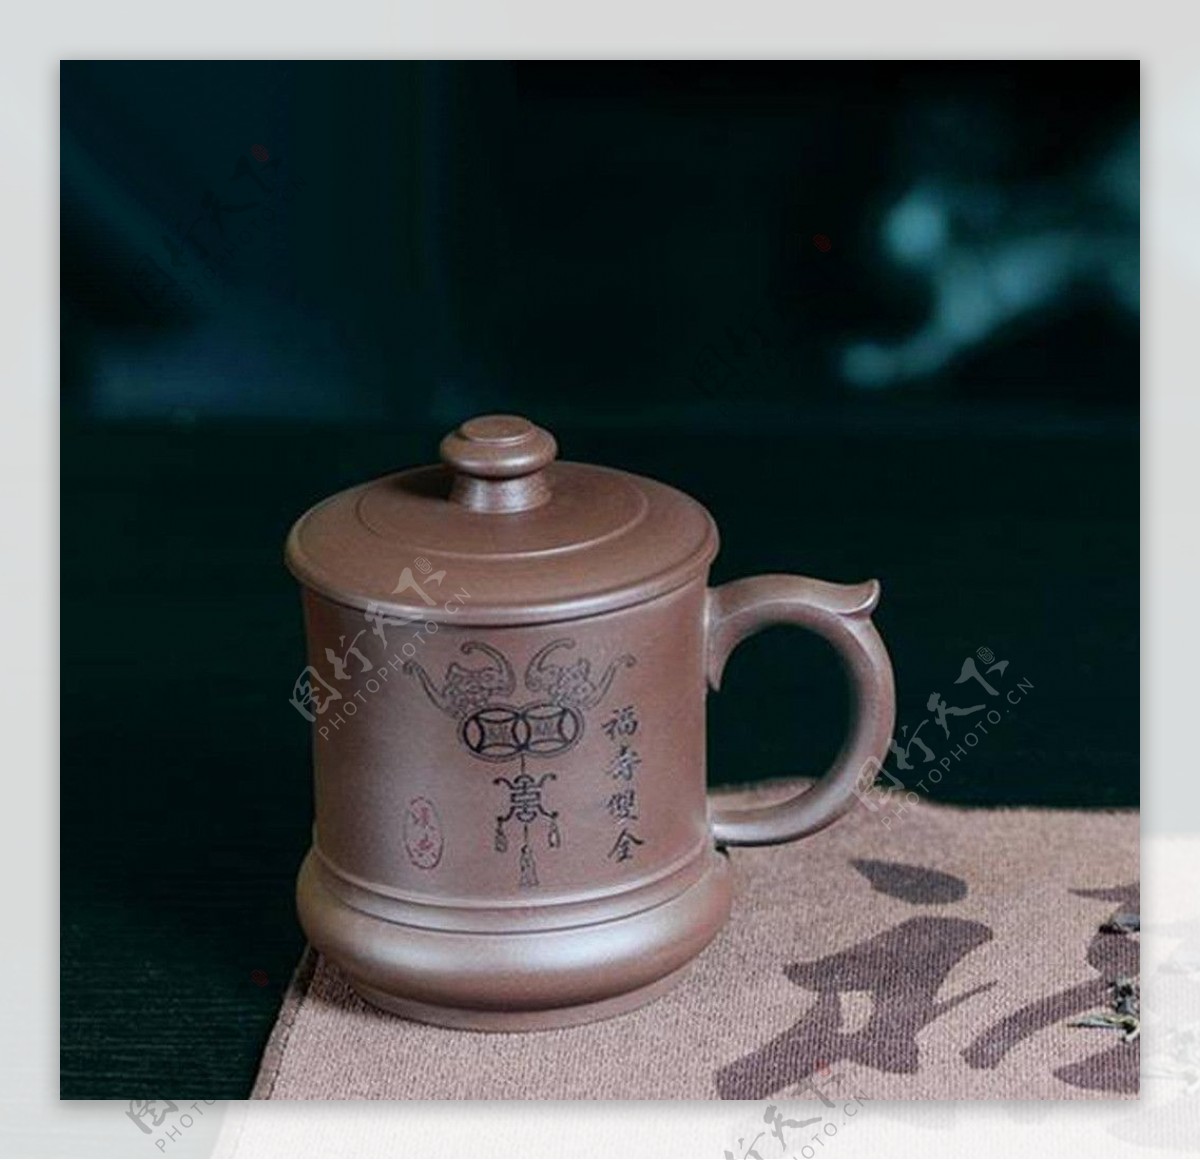 吉祥单杯紫砂茶具图片